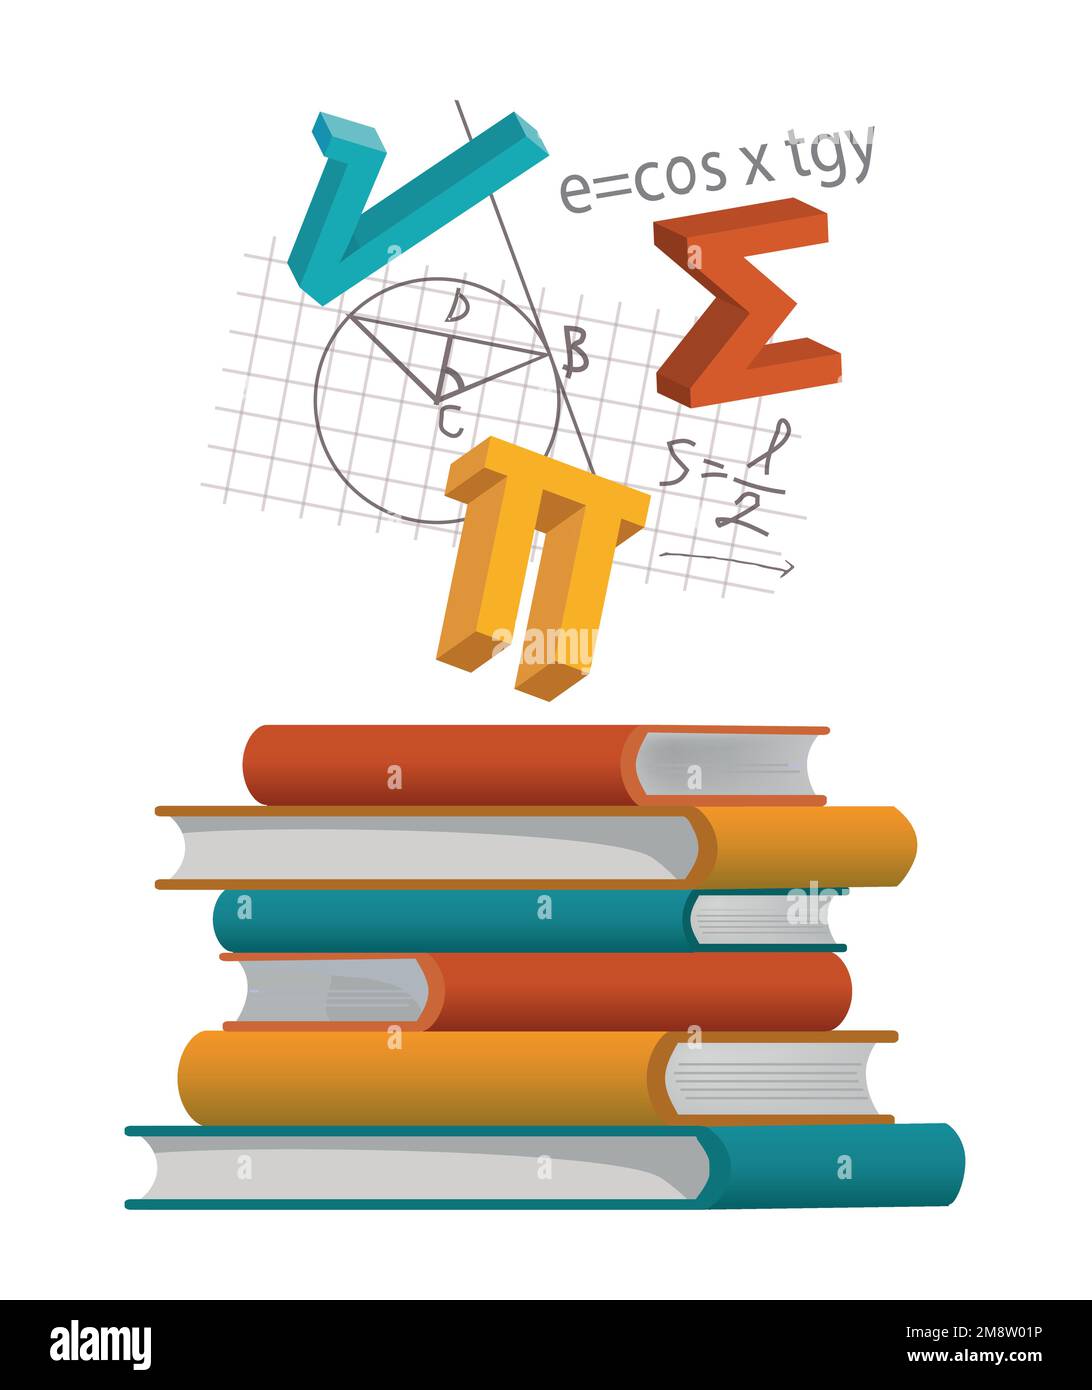 Une pile de manuels de mathématiques. Illustration de livres avec des symboles et des notes mathématiques. Vecteur disponible. Illustration de Vecteur